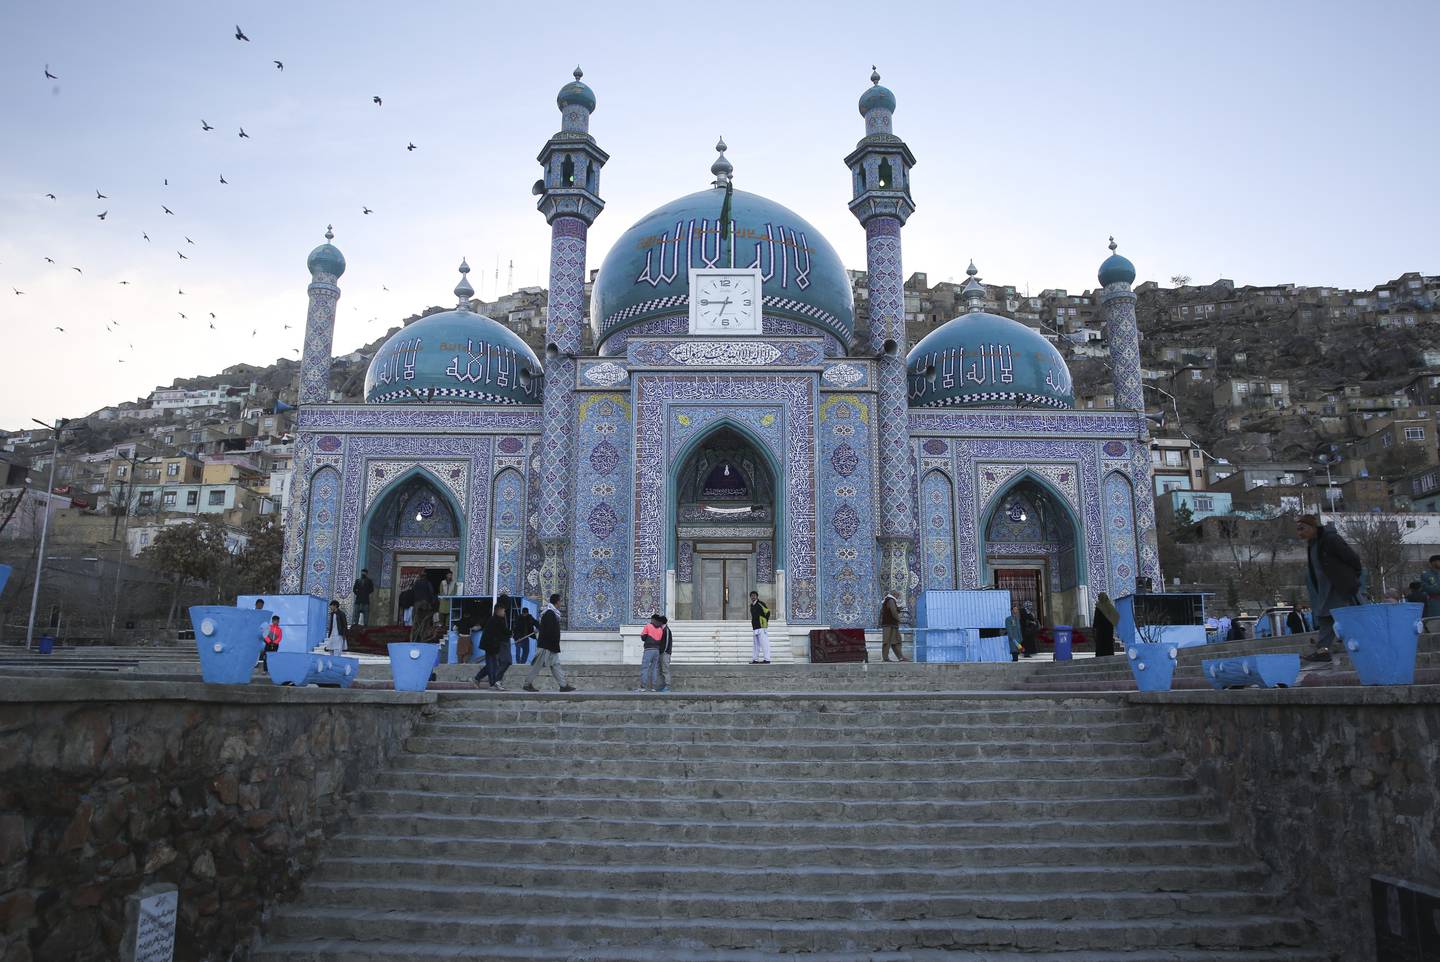 Afghanere vandrer ved Hazara's Sakhi helligdom i Kabul, der profeten Muhammeds frakk skal ha blitt oppbevart. Et av mange mulige afghanske turistmål når Taliban nå ønsker flere turister til landet. Foto: Siddiqullah Alizai/AP/NTB